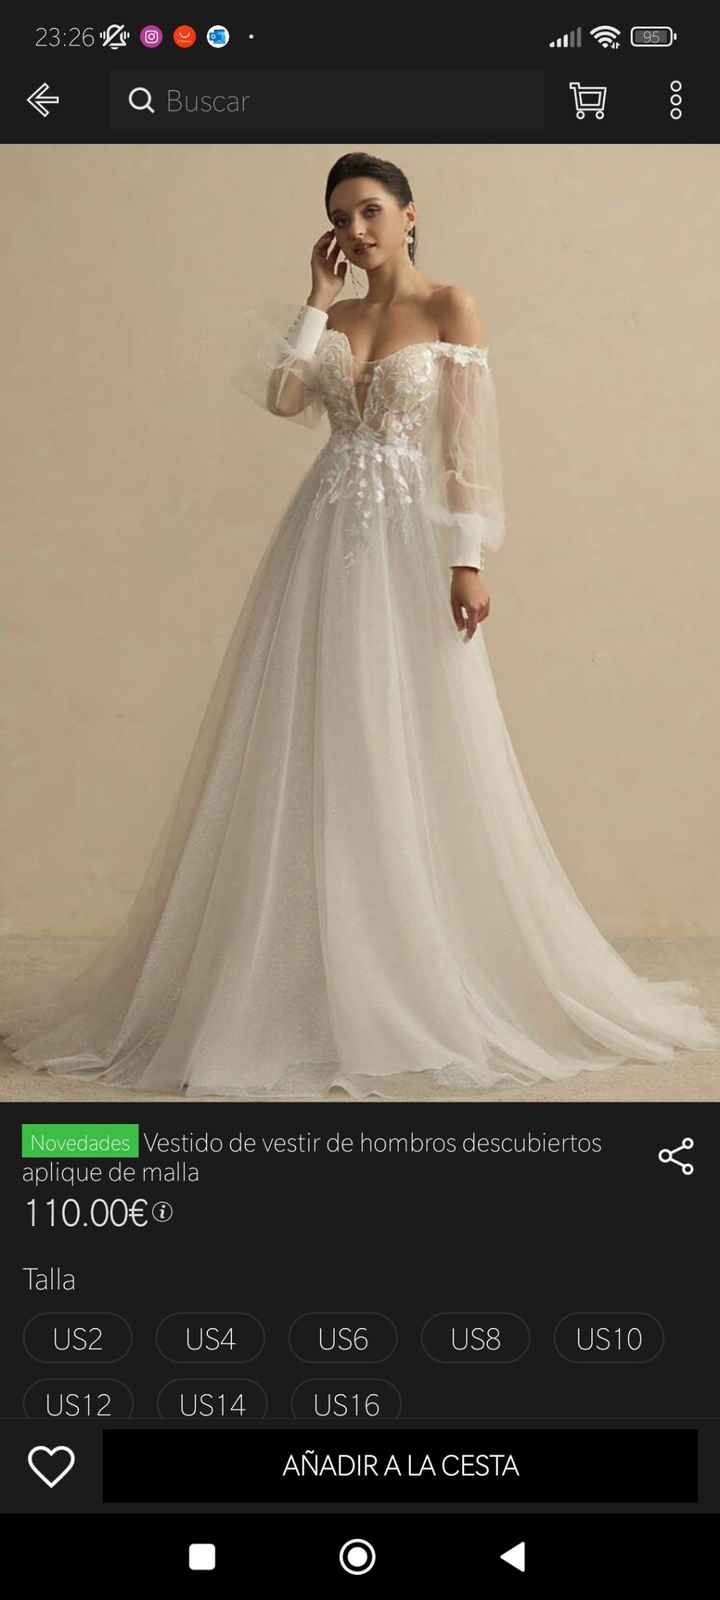 Nuevos vestidos de novia shein - 5